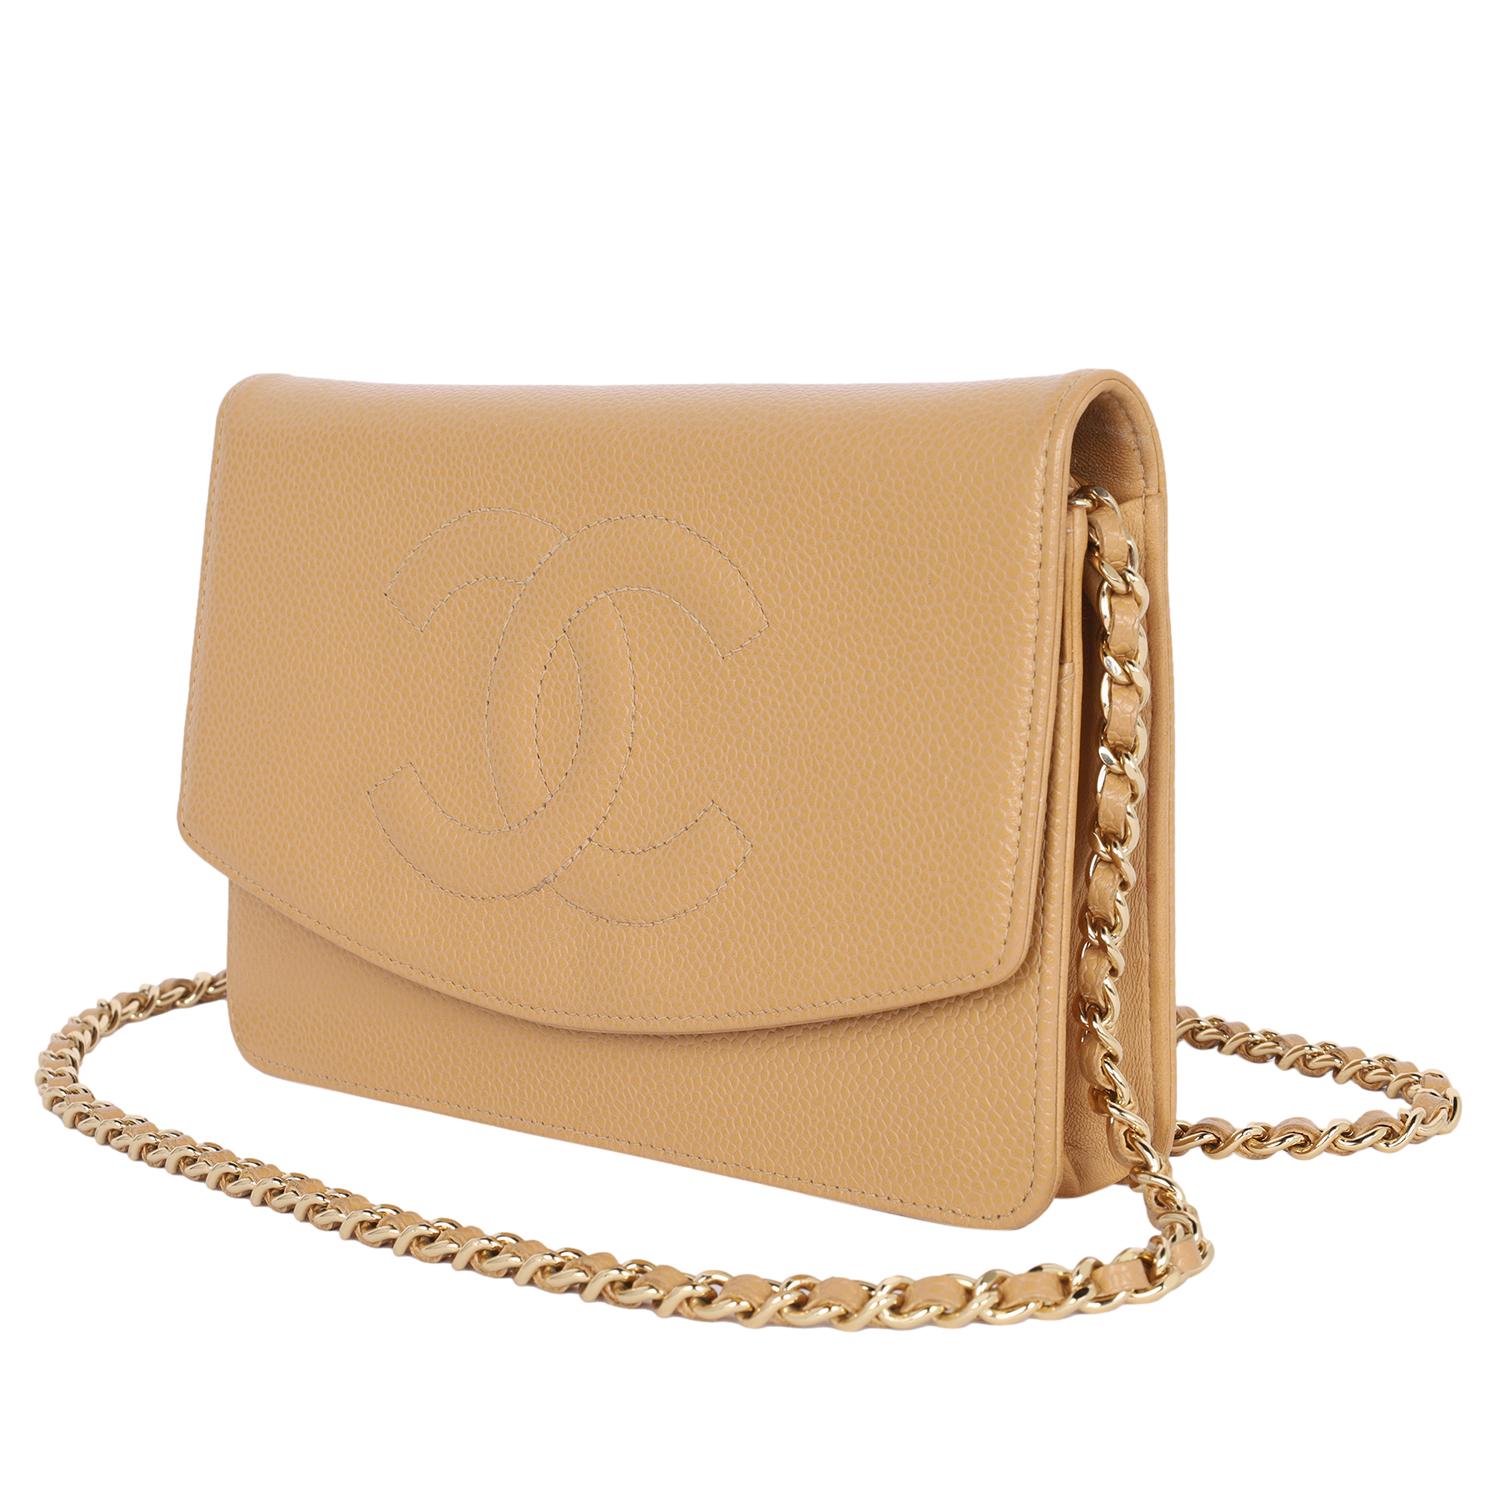 Authentisches, gebrauchtes Chanel Portemonnaie aus braunem Kaviarleder an einer Kette. Diese Tasche ist wunderschön!

Aufgrund ihrer Vielseitigkeit ist die Wallet on a Chain (oder WOC) äußerst beliebt und immer gefragt. Das gerbsäurehaltige braune